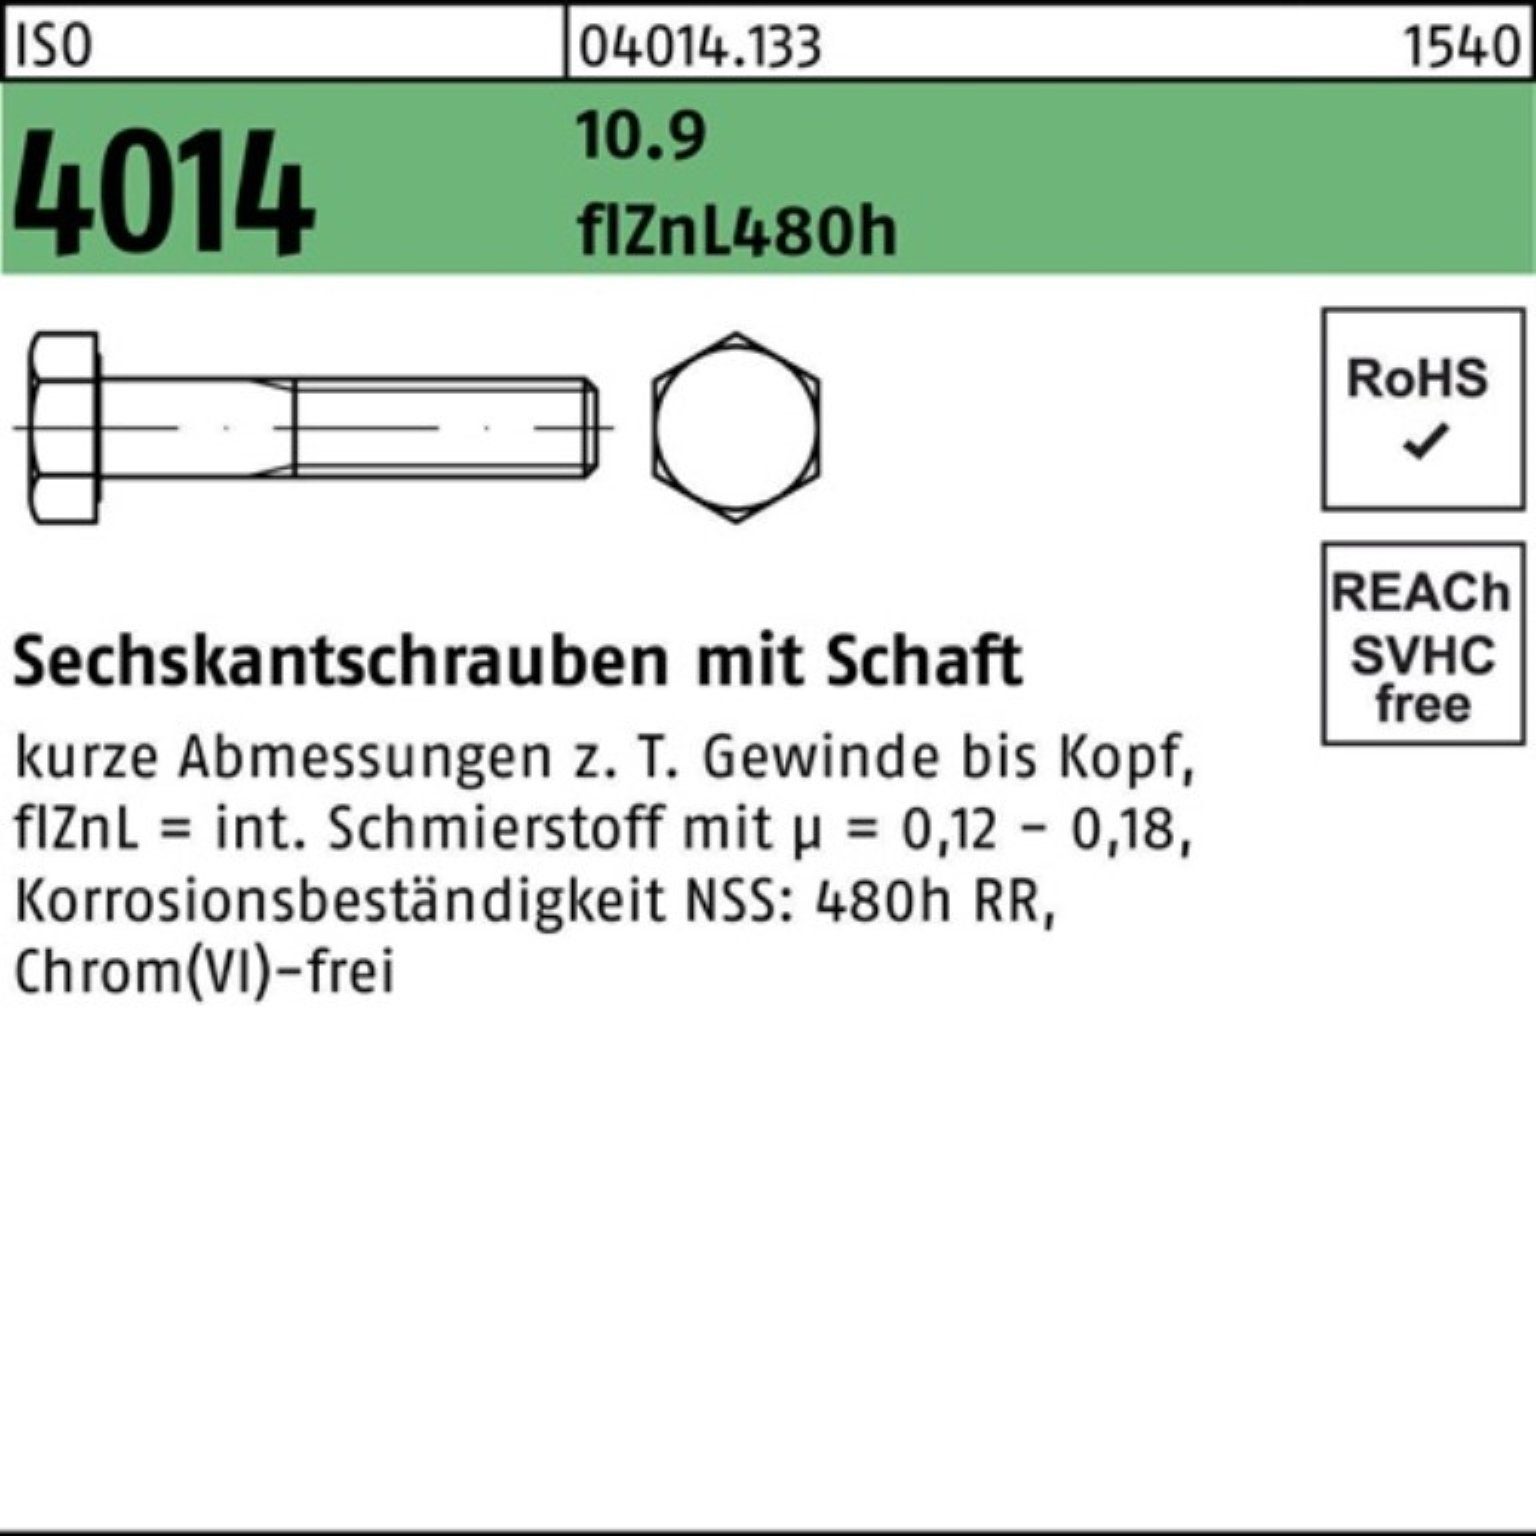 Bufab Sechskantschraube 100er Pack Schaft 4014 Sechskantschraube ISO 10.9 130 M12x zinklamelle